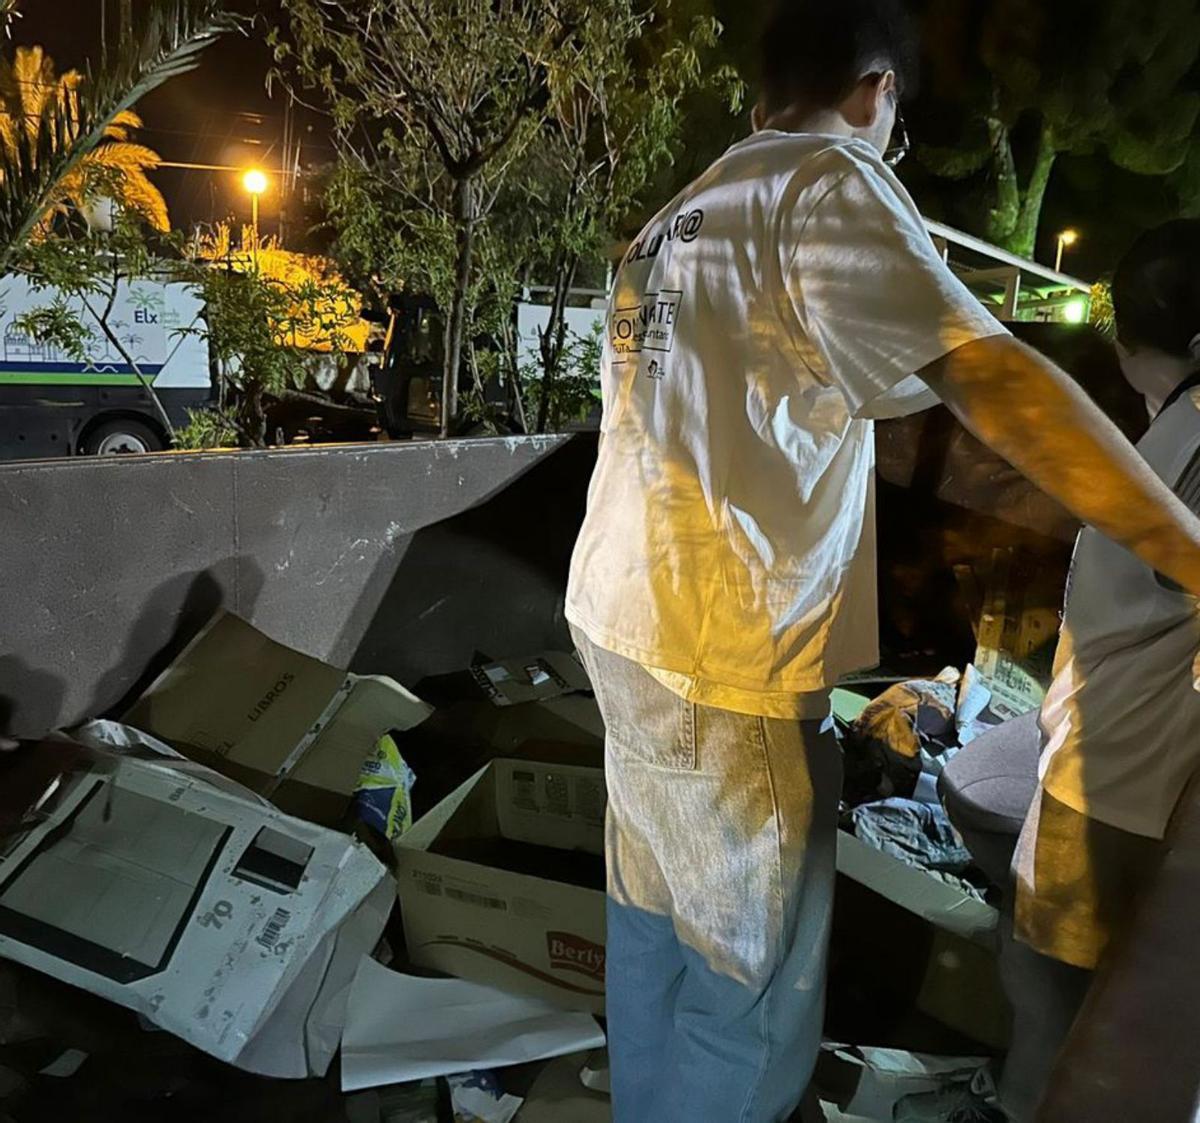 Cartones y otras pertenencias de las personas sin hogar en un contenedor.  | INFORMACIÓN